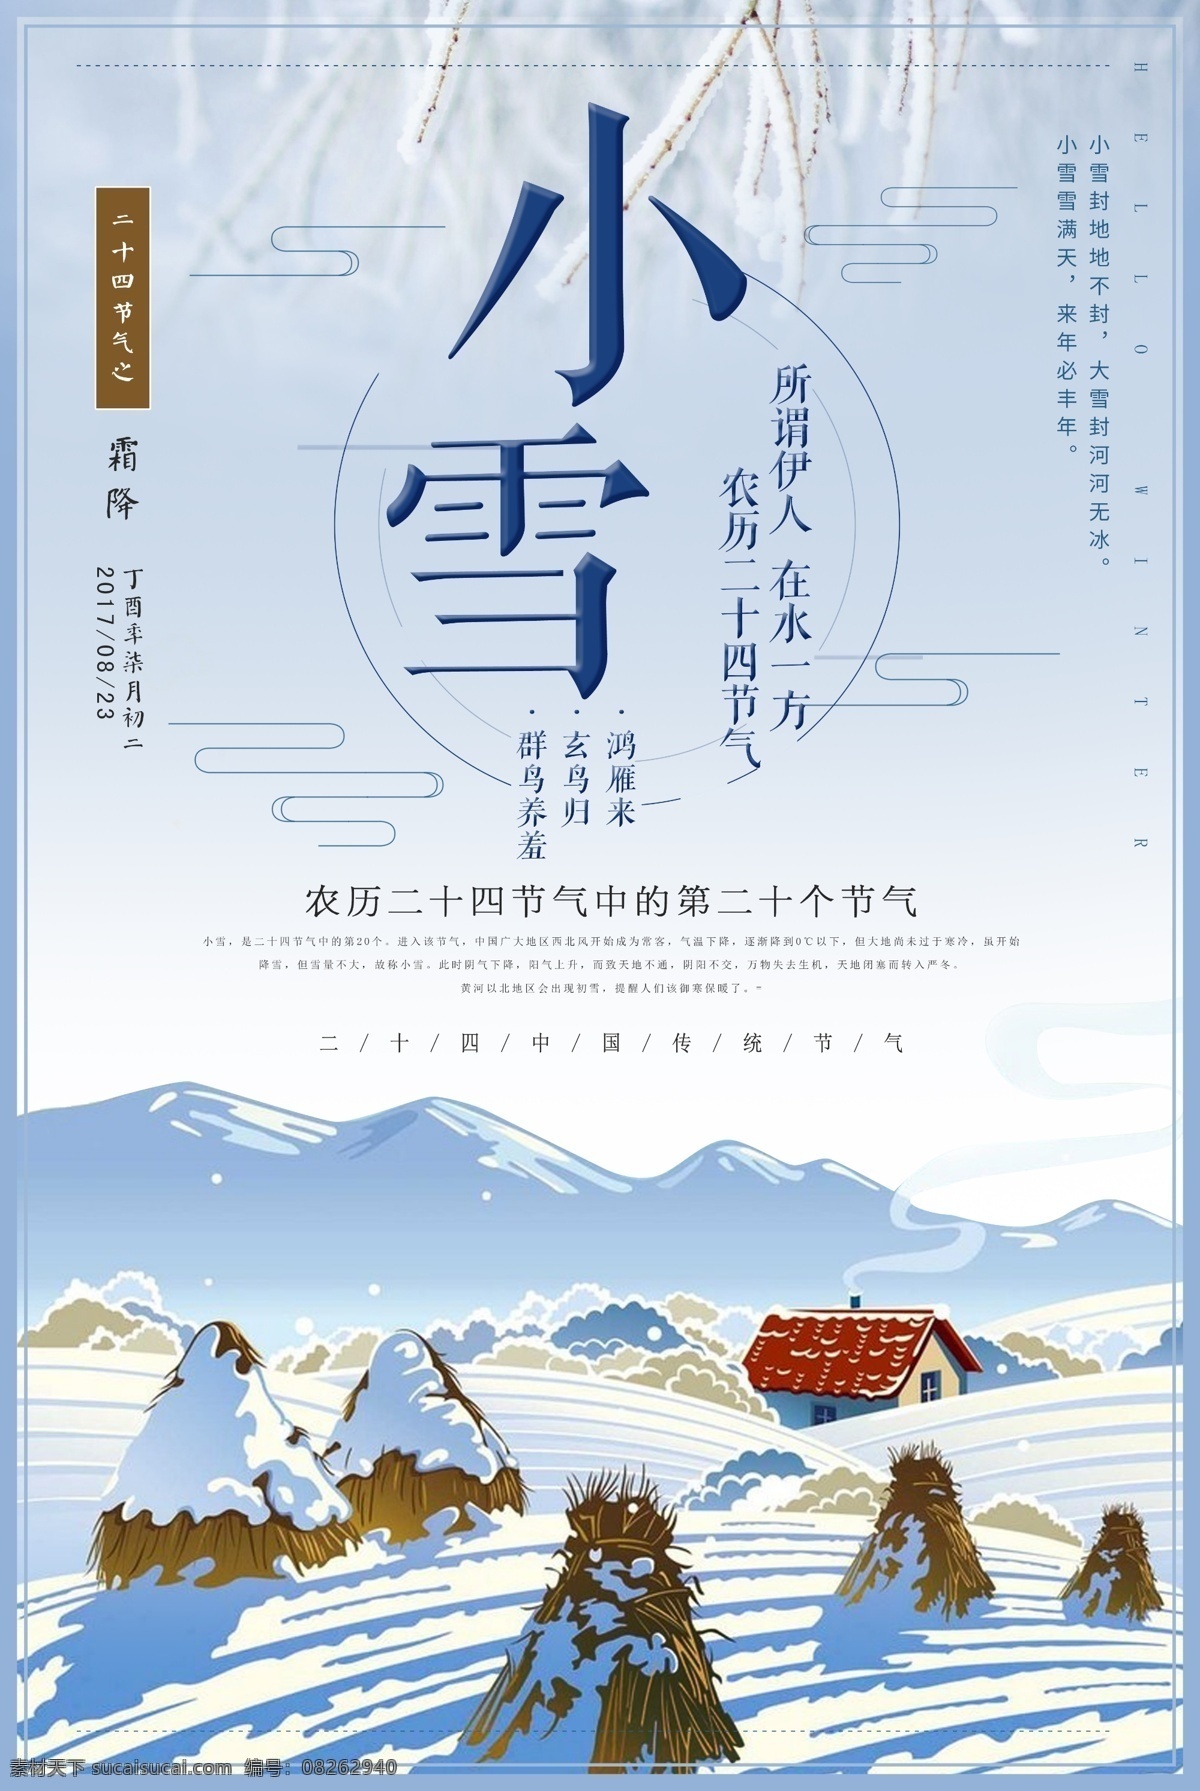 创意 二十四节气 小雪 国传统 卡通中国 节气 大雪图片 模板 大雪 小雪花图片 稻草 海报模板